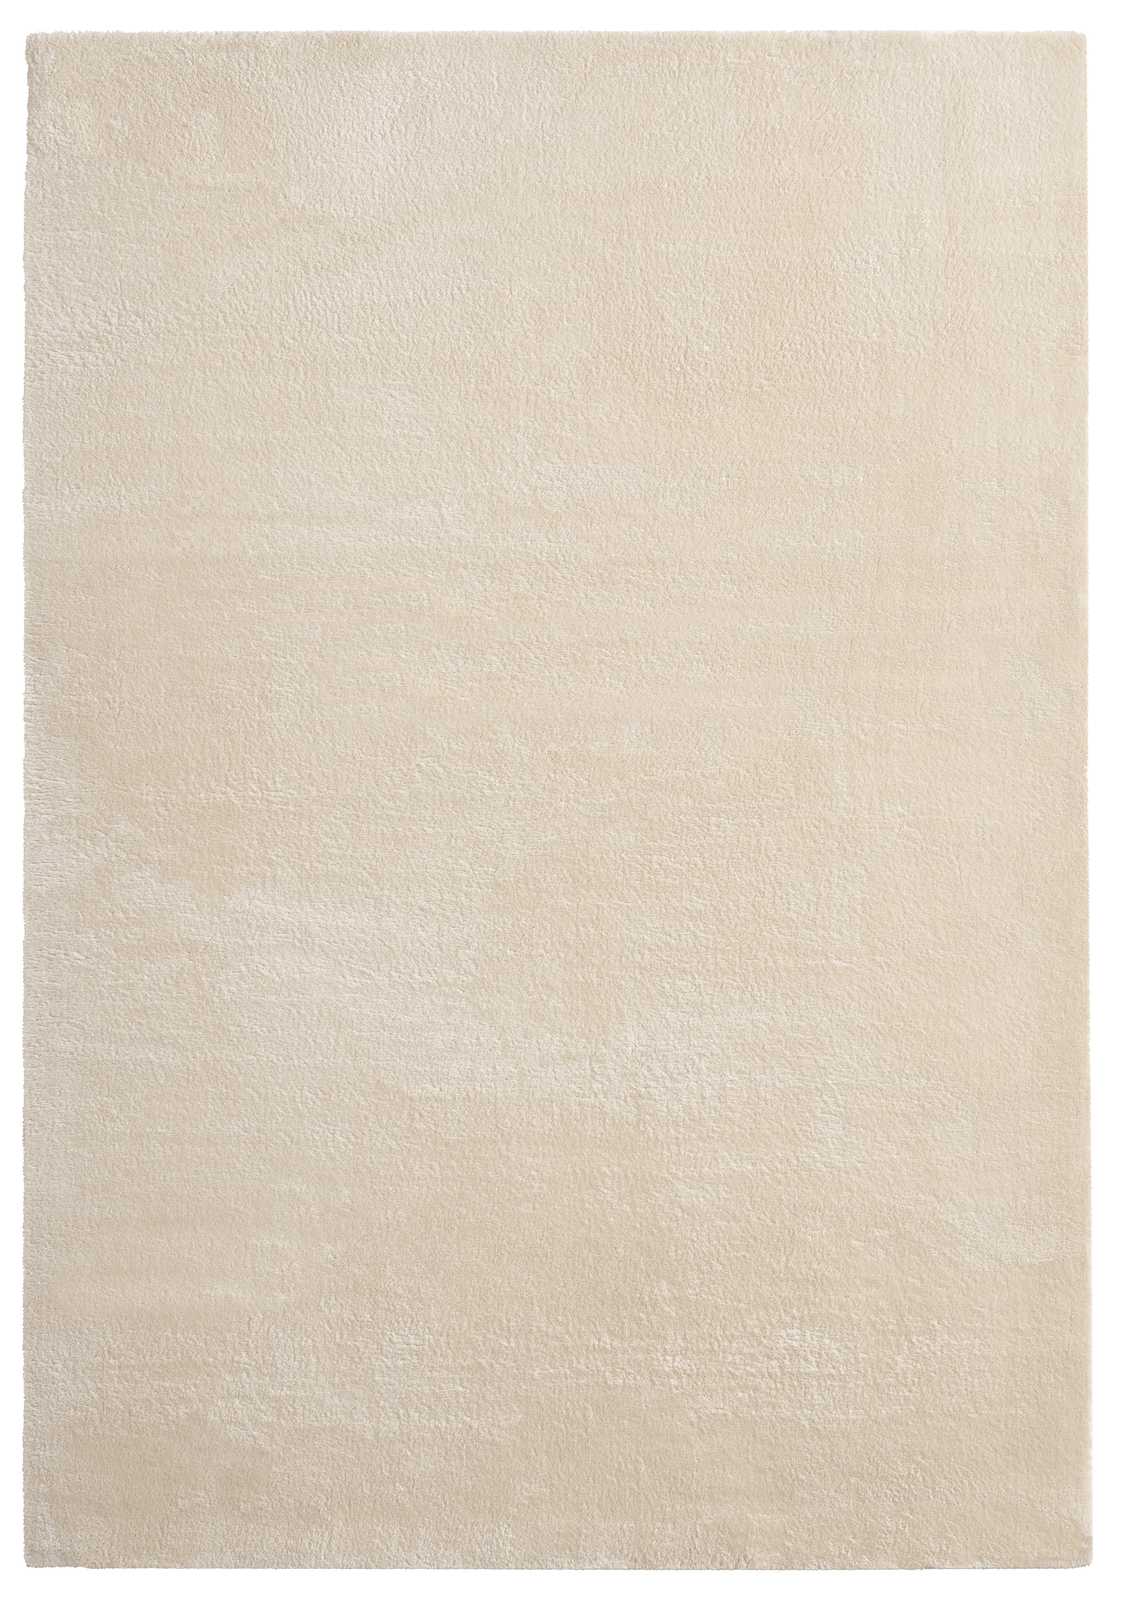             Tapis moelleux à poils longs beige - 290 x 200 cm
        